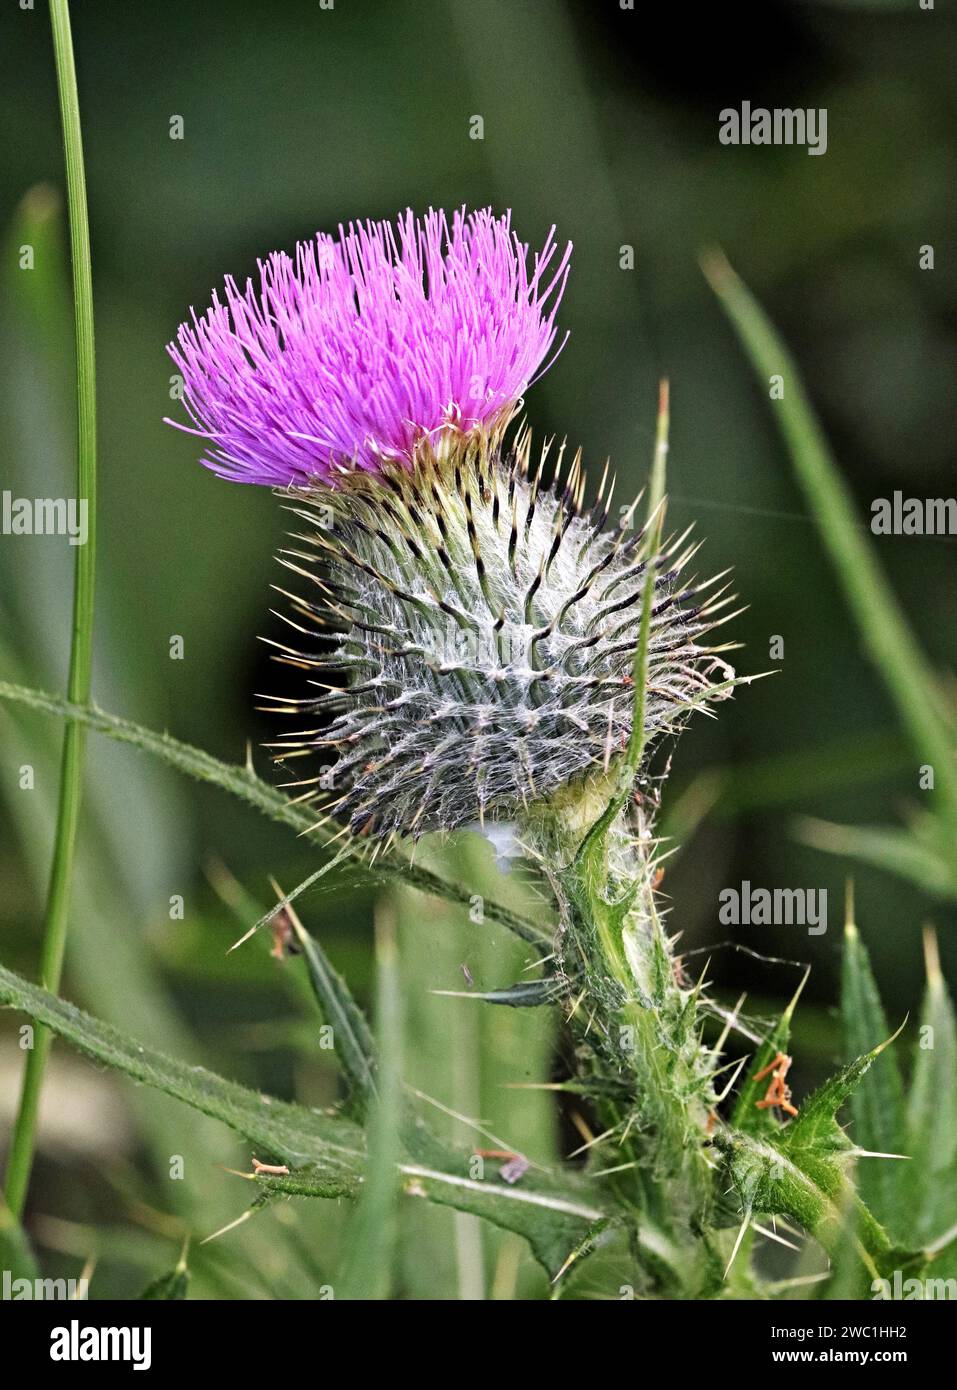 Thistle Head, fiore di Scozia Foto Stock